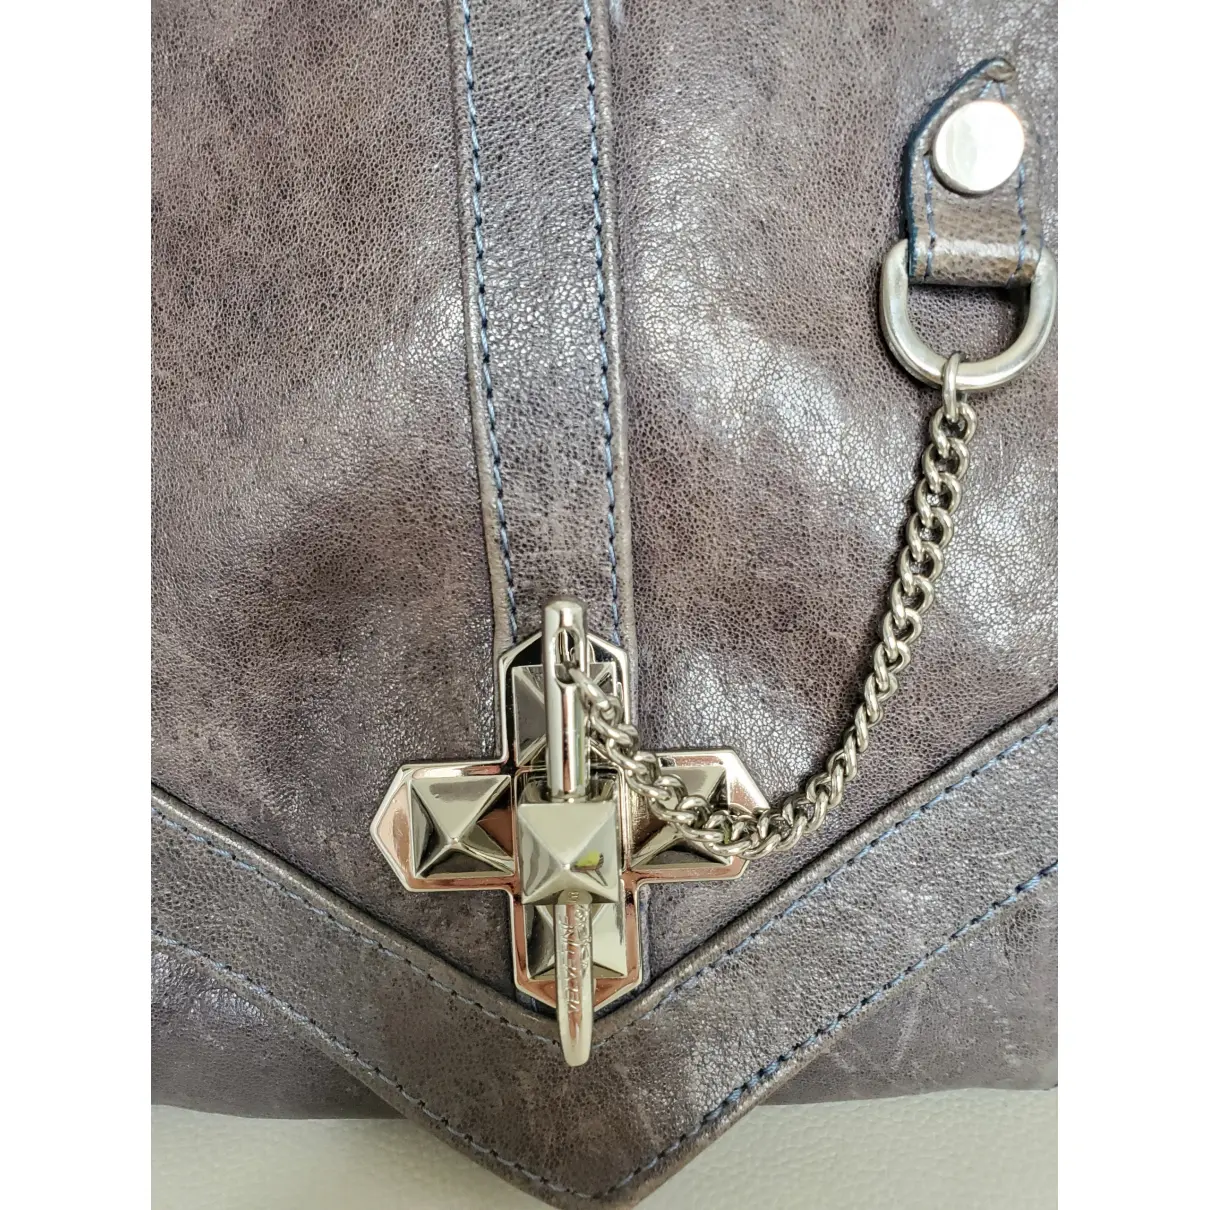 Buy Velvetine Leather crossbody bag online